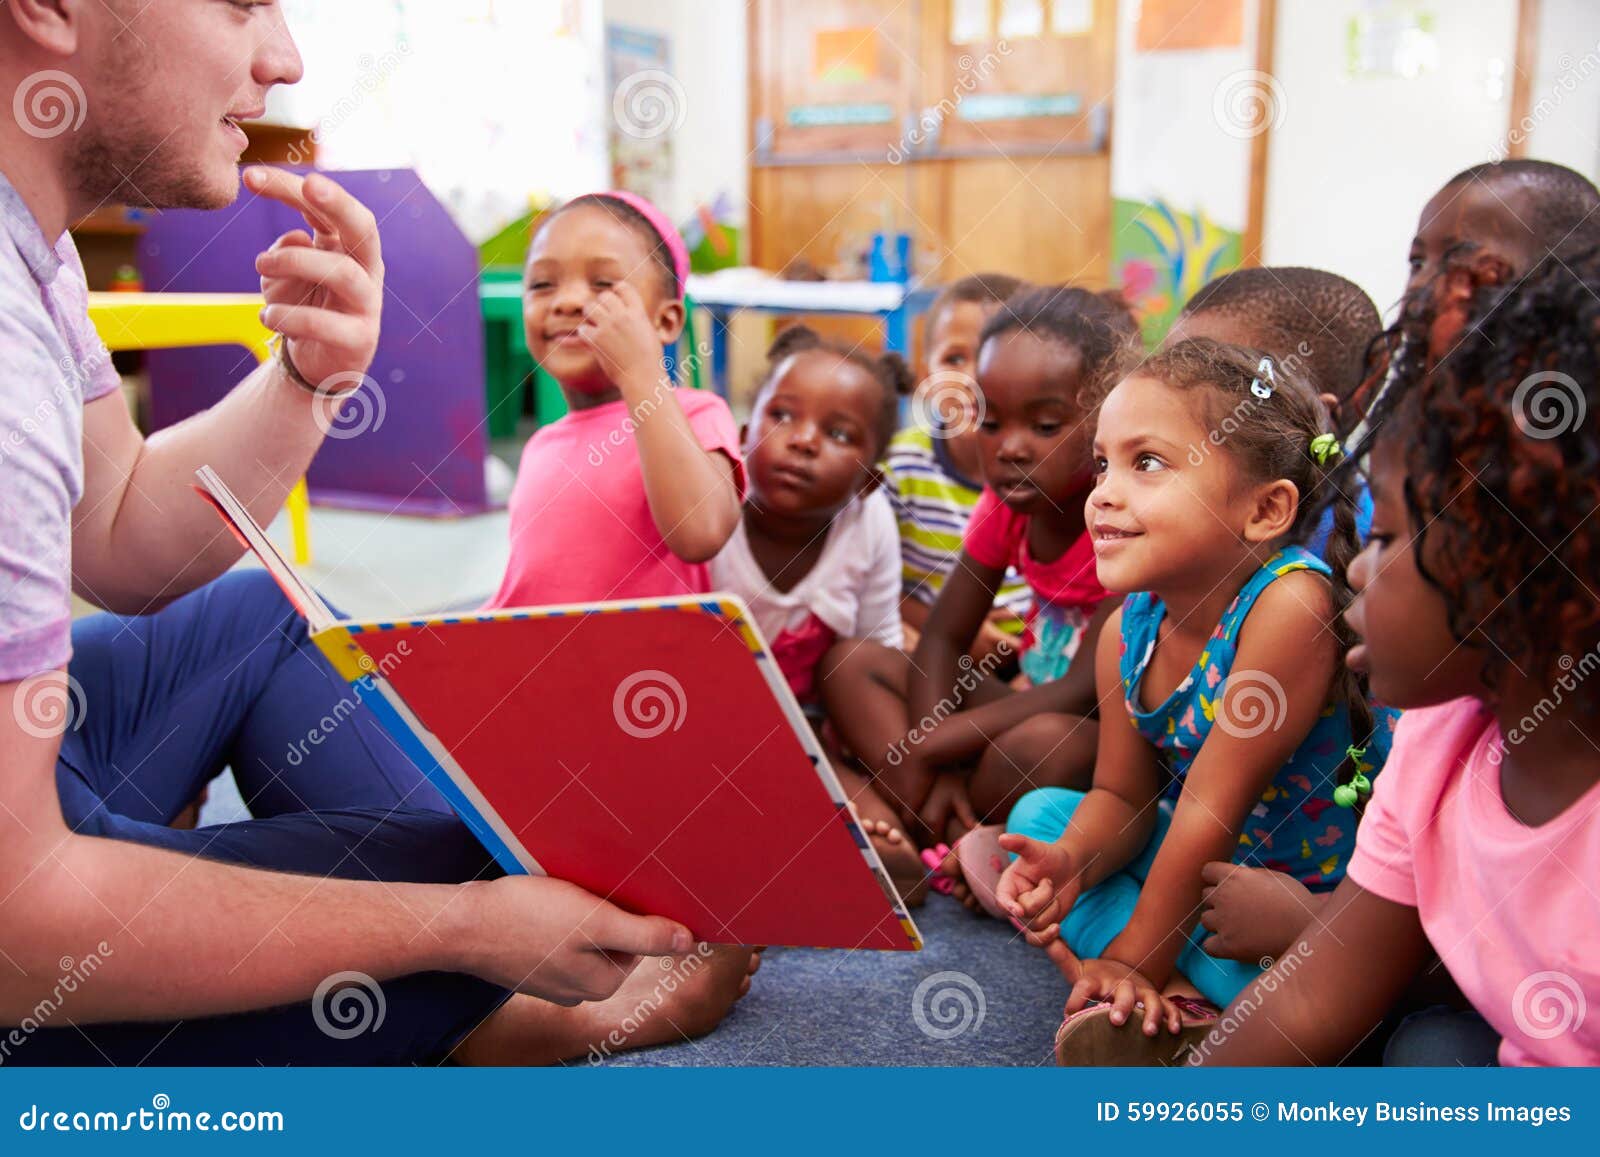 volunteer teacher reading to a class of preschool kids